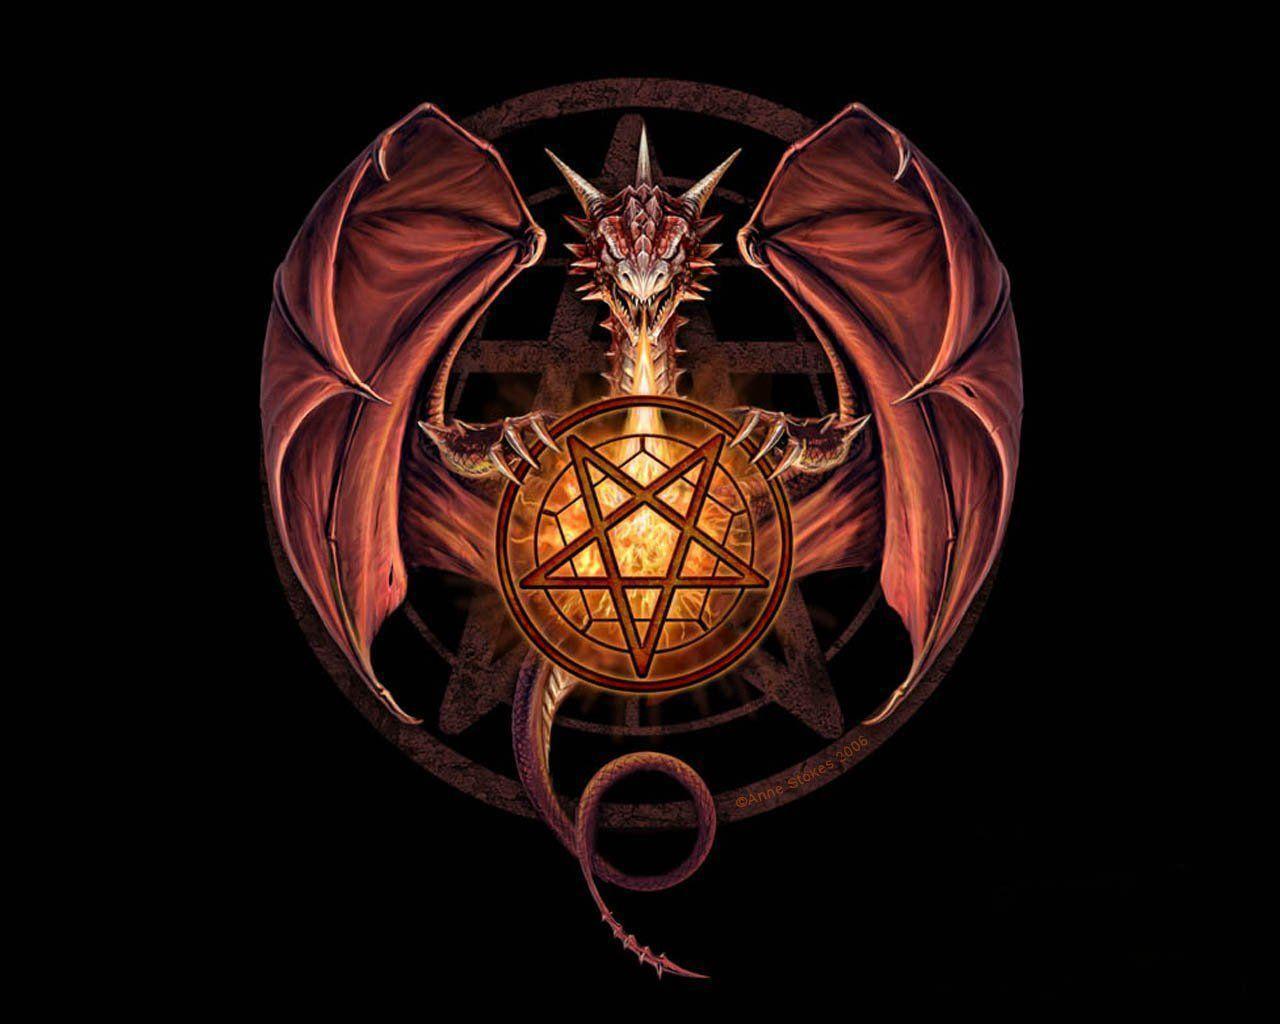 Hd Wallpaper Satanic Pentagram 450 X 281 35 Kb Jpeg. HD